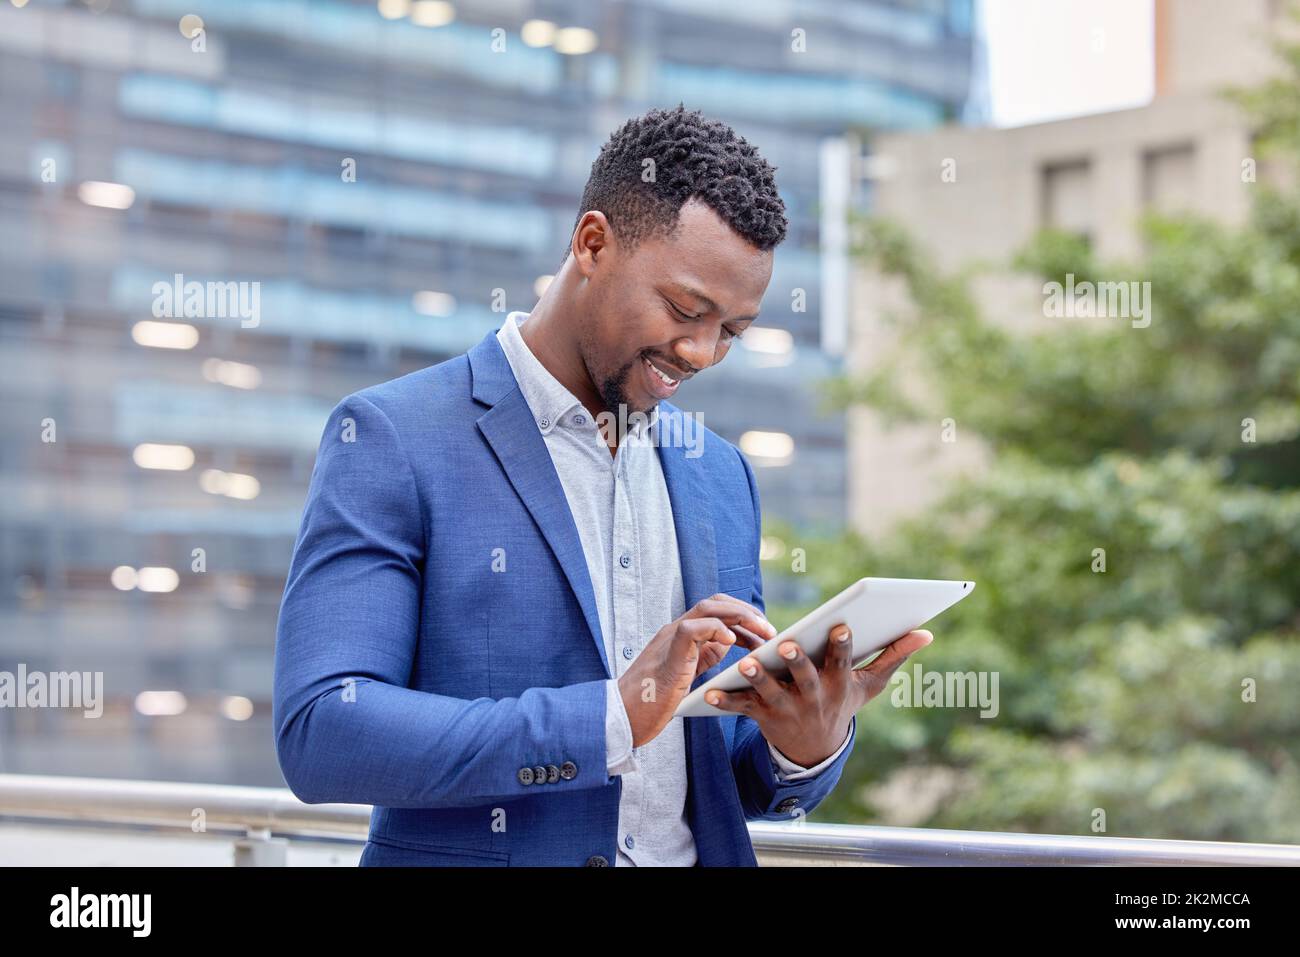 Hes tiene todas las conexiones. Foto de un joven hombre de negocios usando una tableta digital contra un fondo de la ciudad. Foto de stock